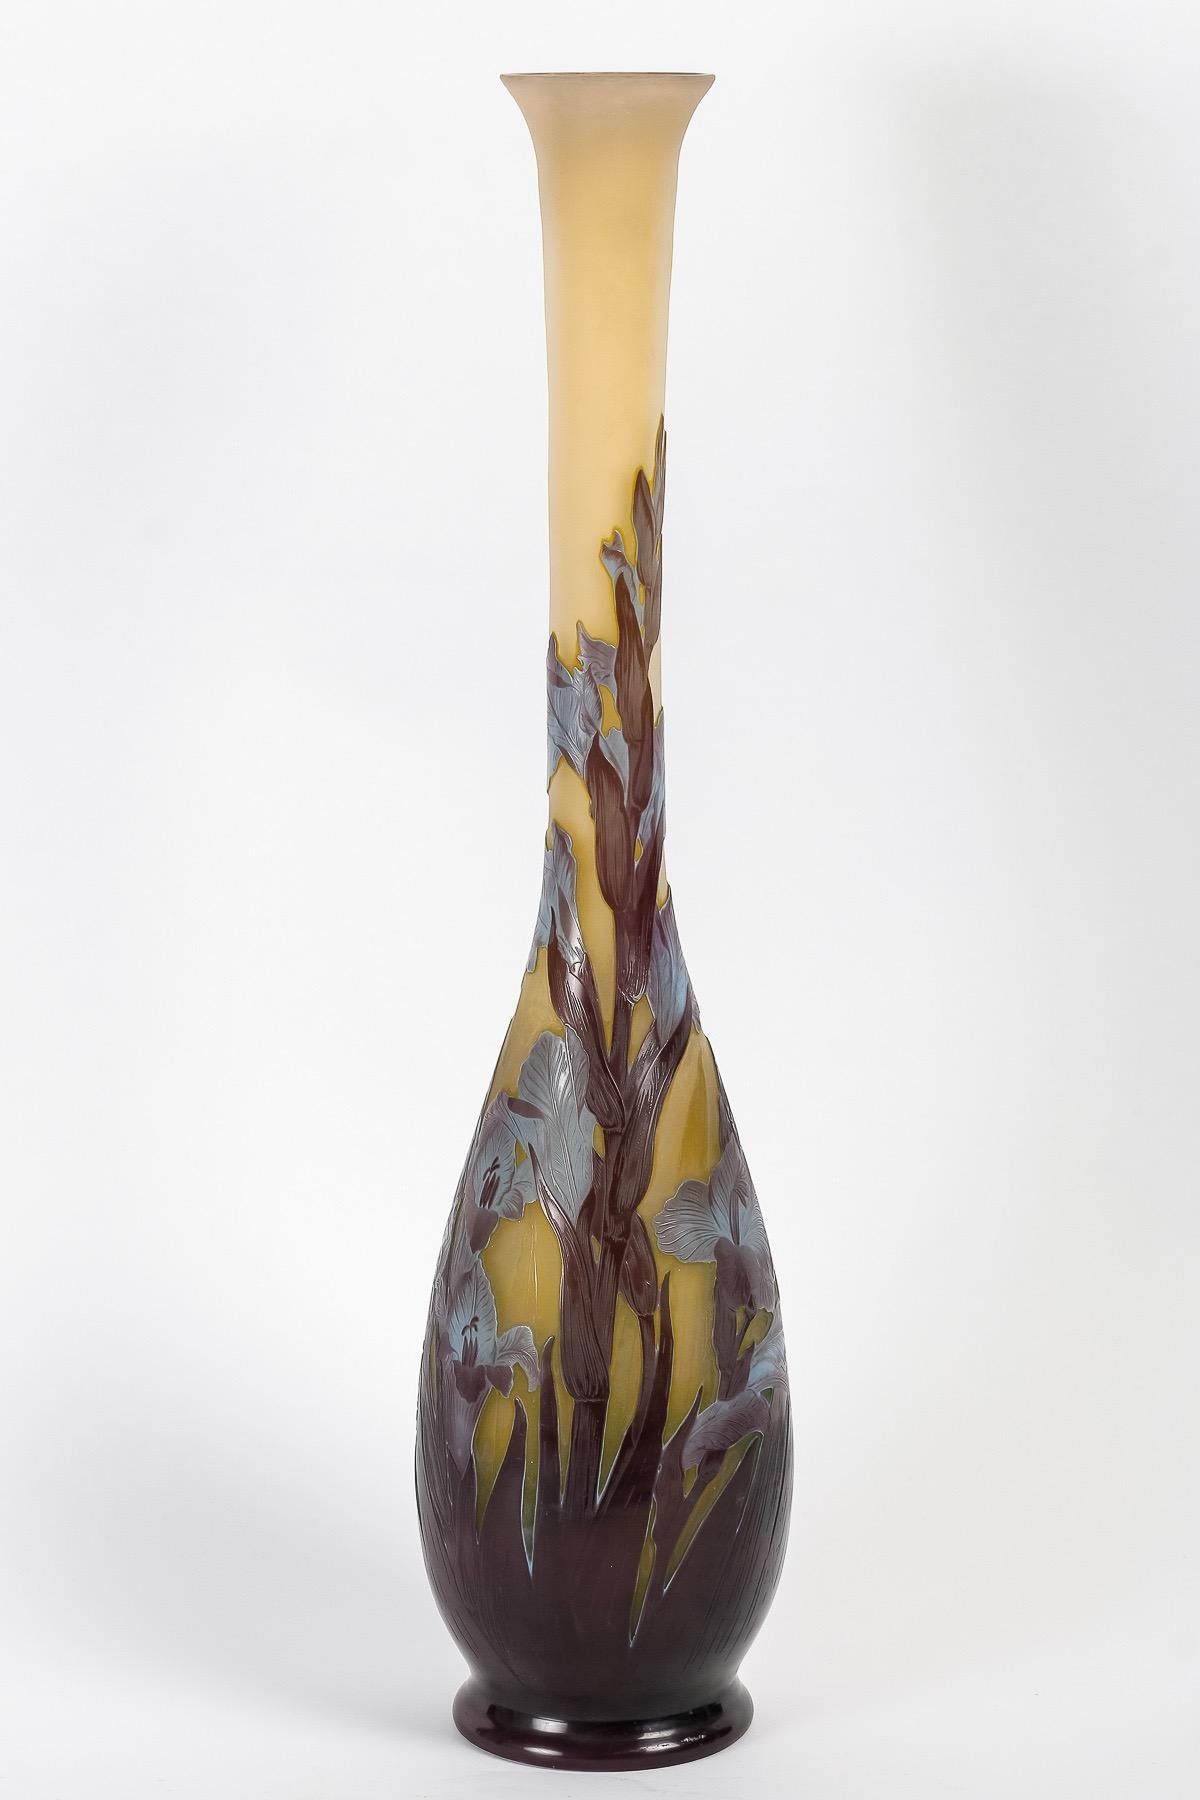 Émile Gallé (1846-1904), Vase en verre camée Art nouveau 